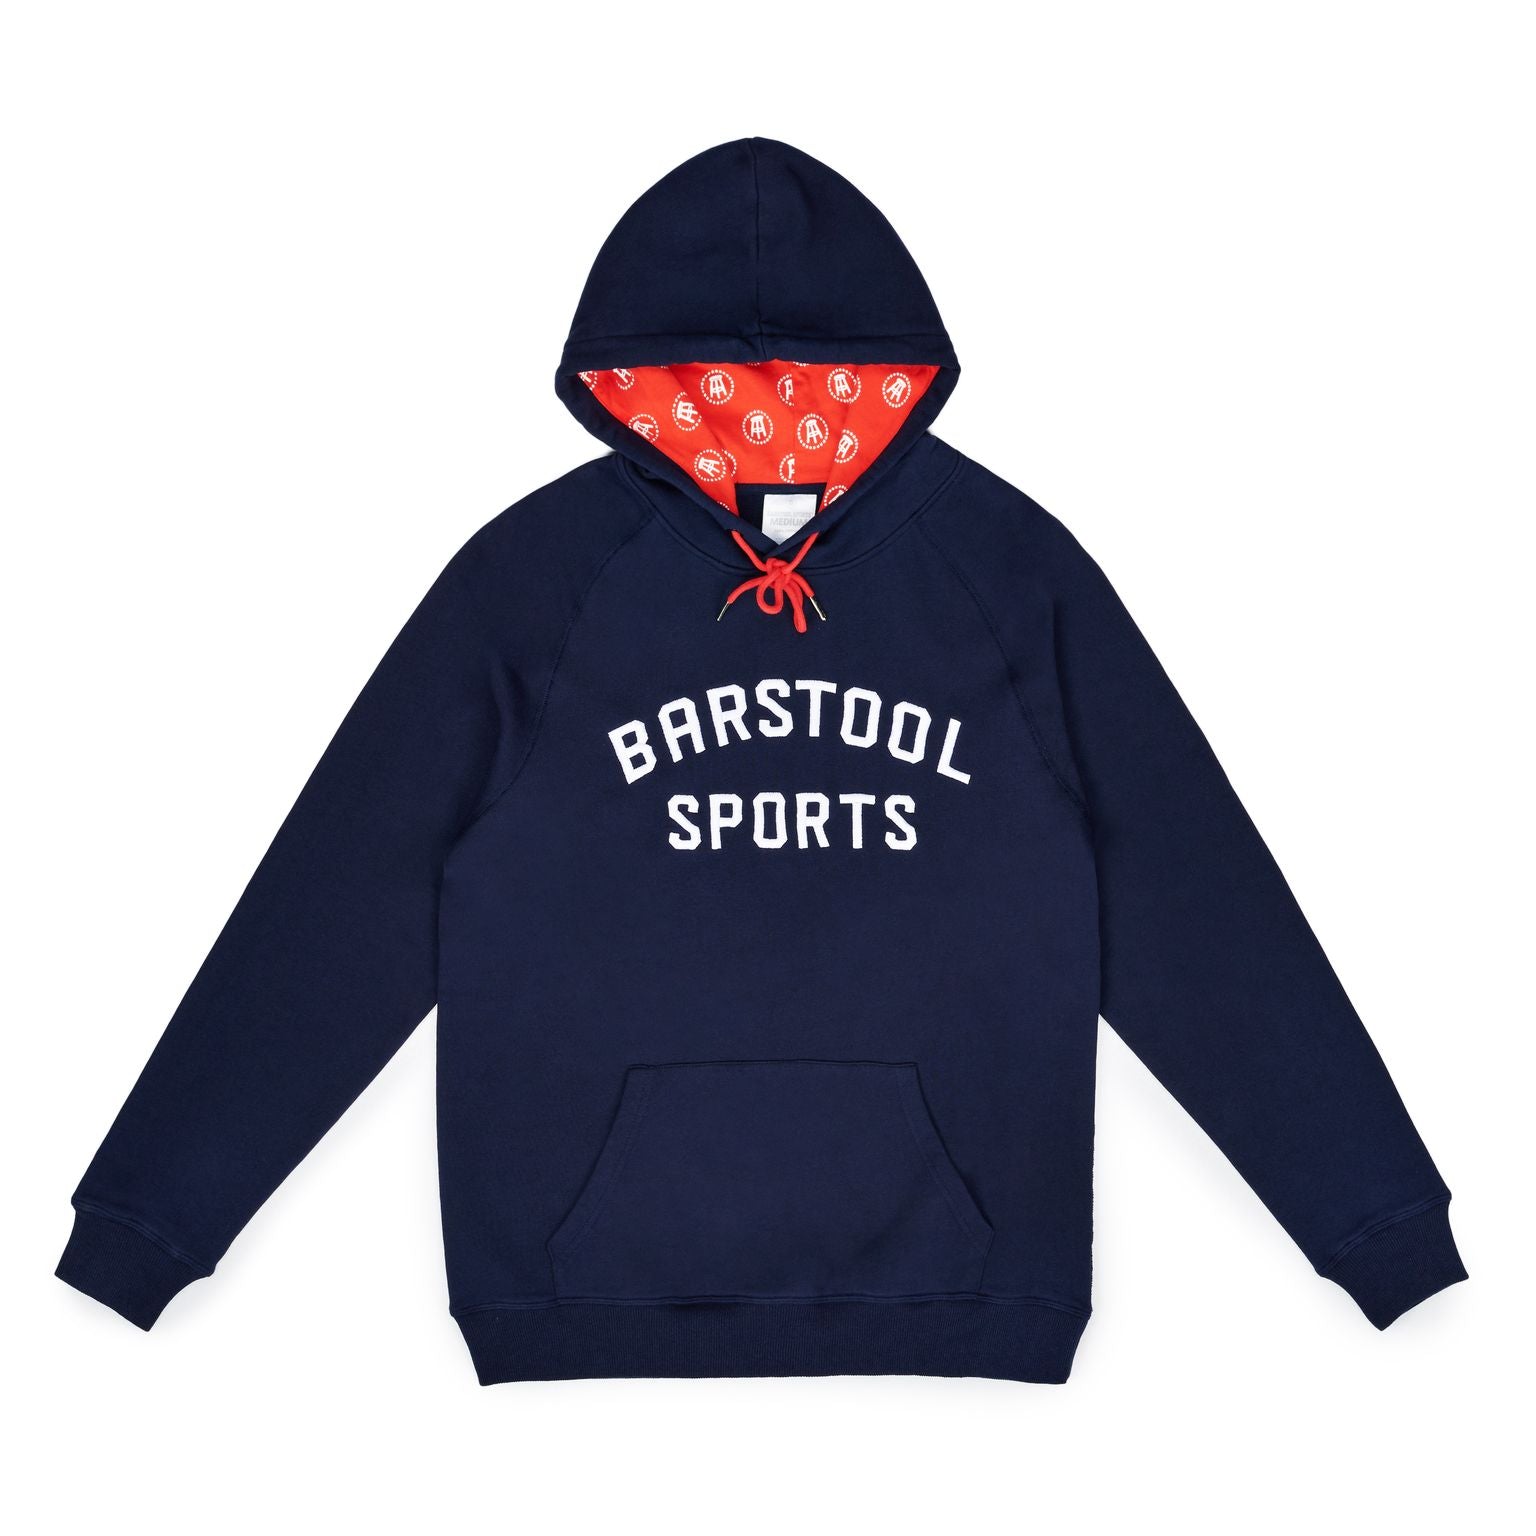 Barstool Sports Printed Hoodie-Hoodies & Sweatshirts-Barstool Sports-Navy-S-Barstool Sports